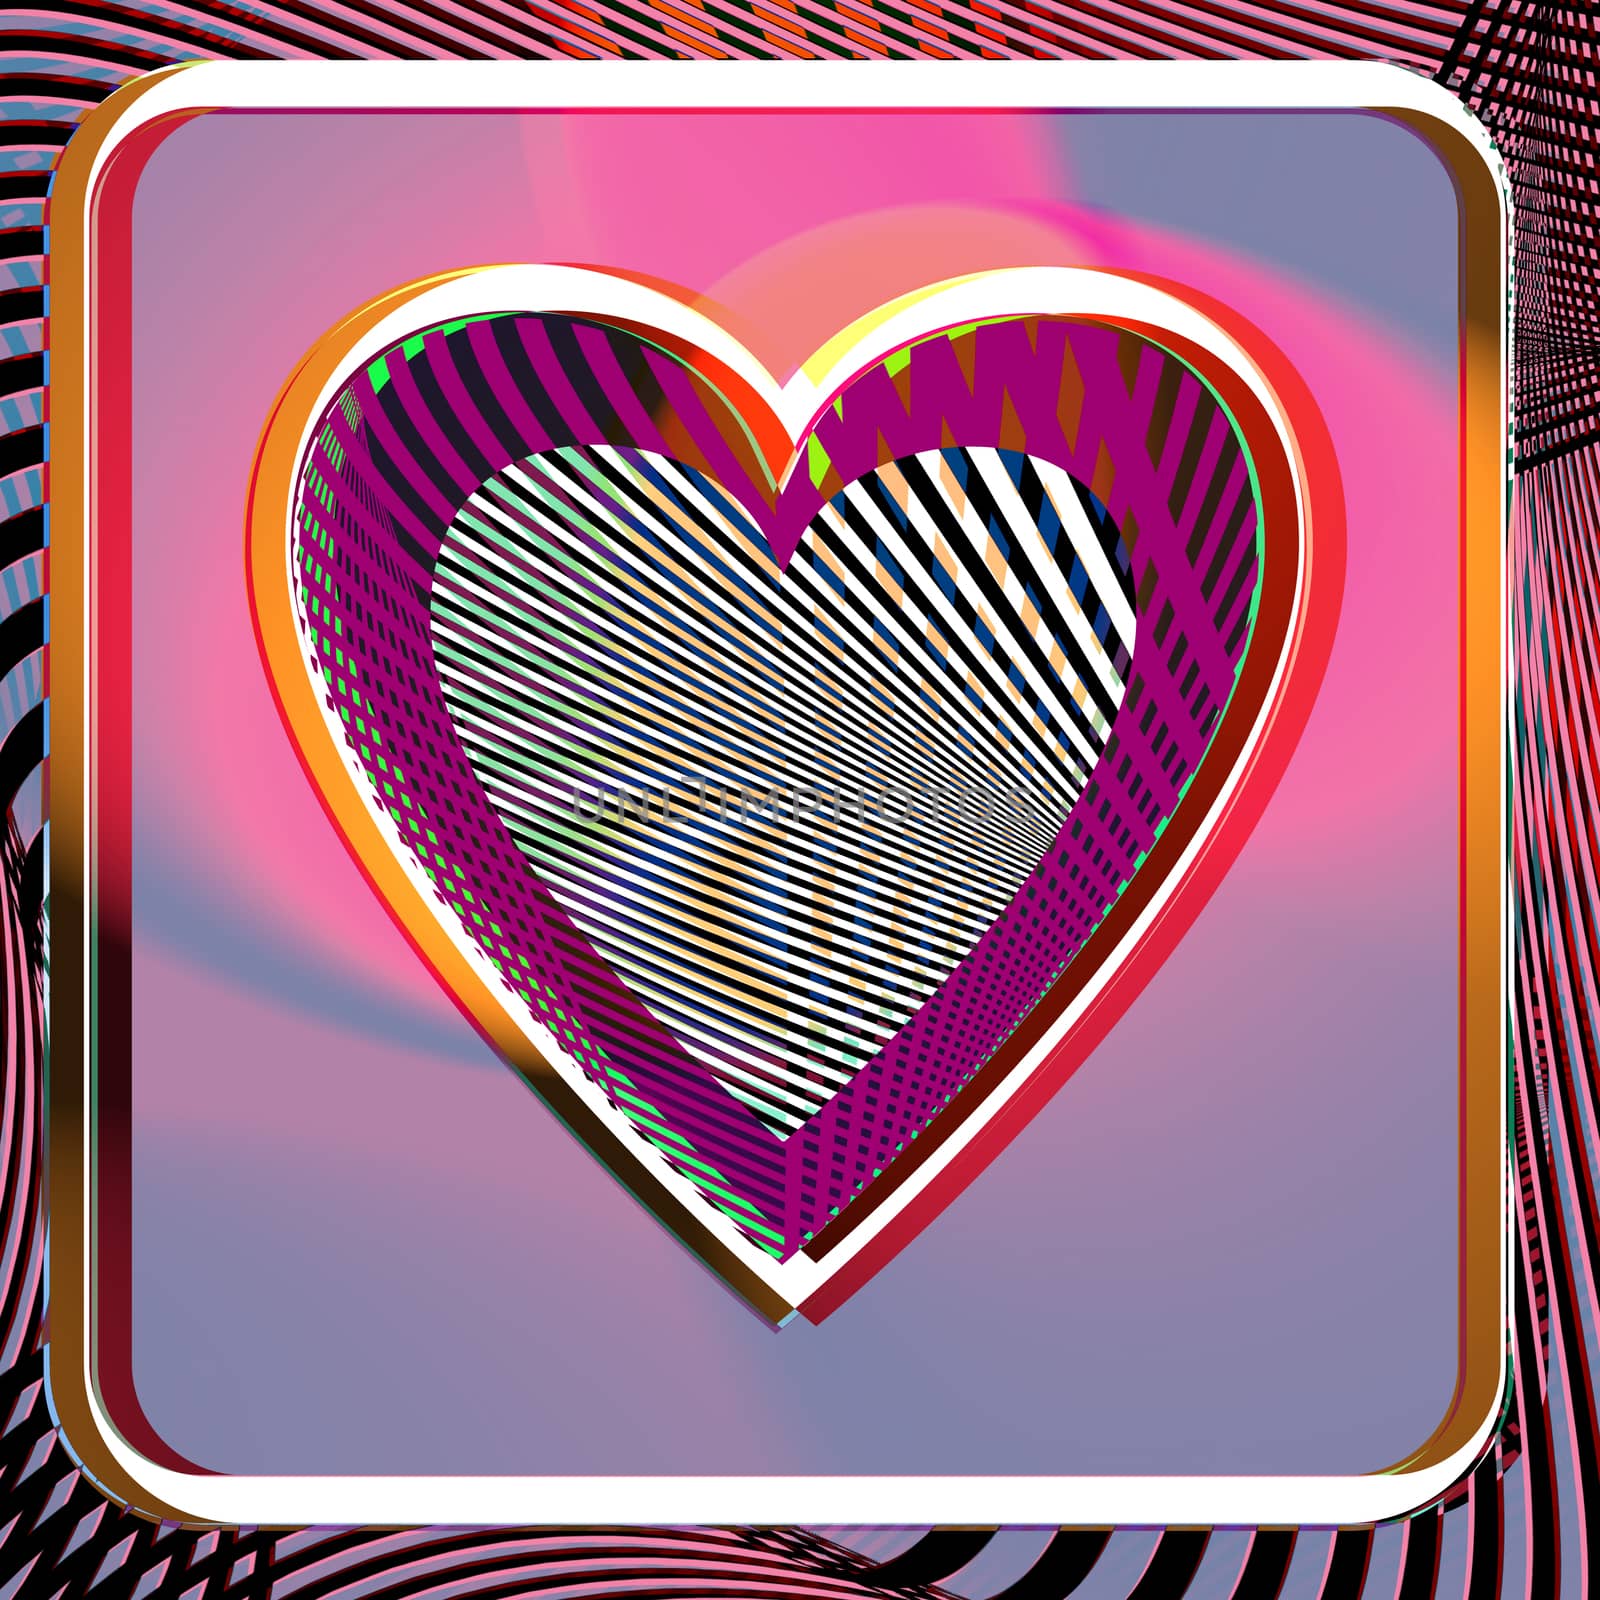 Heart illustration by aroas